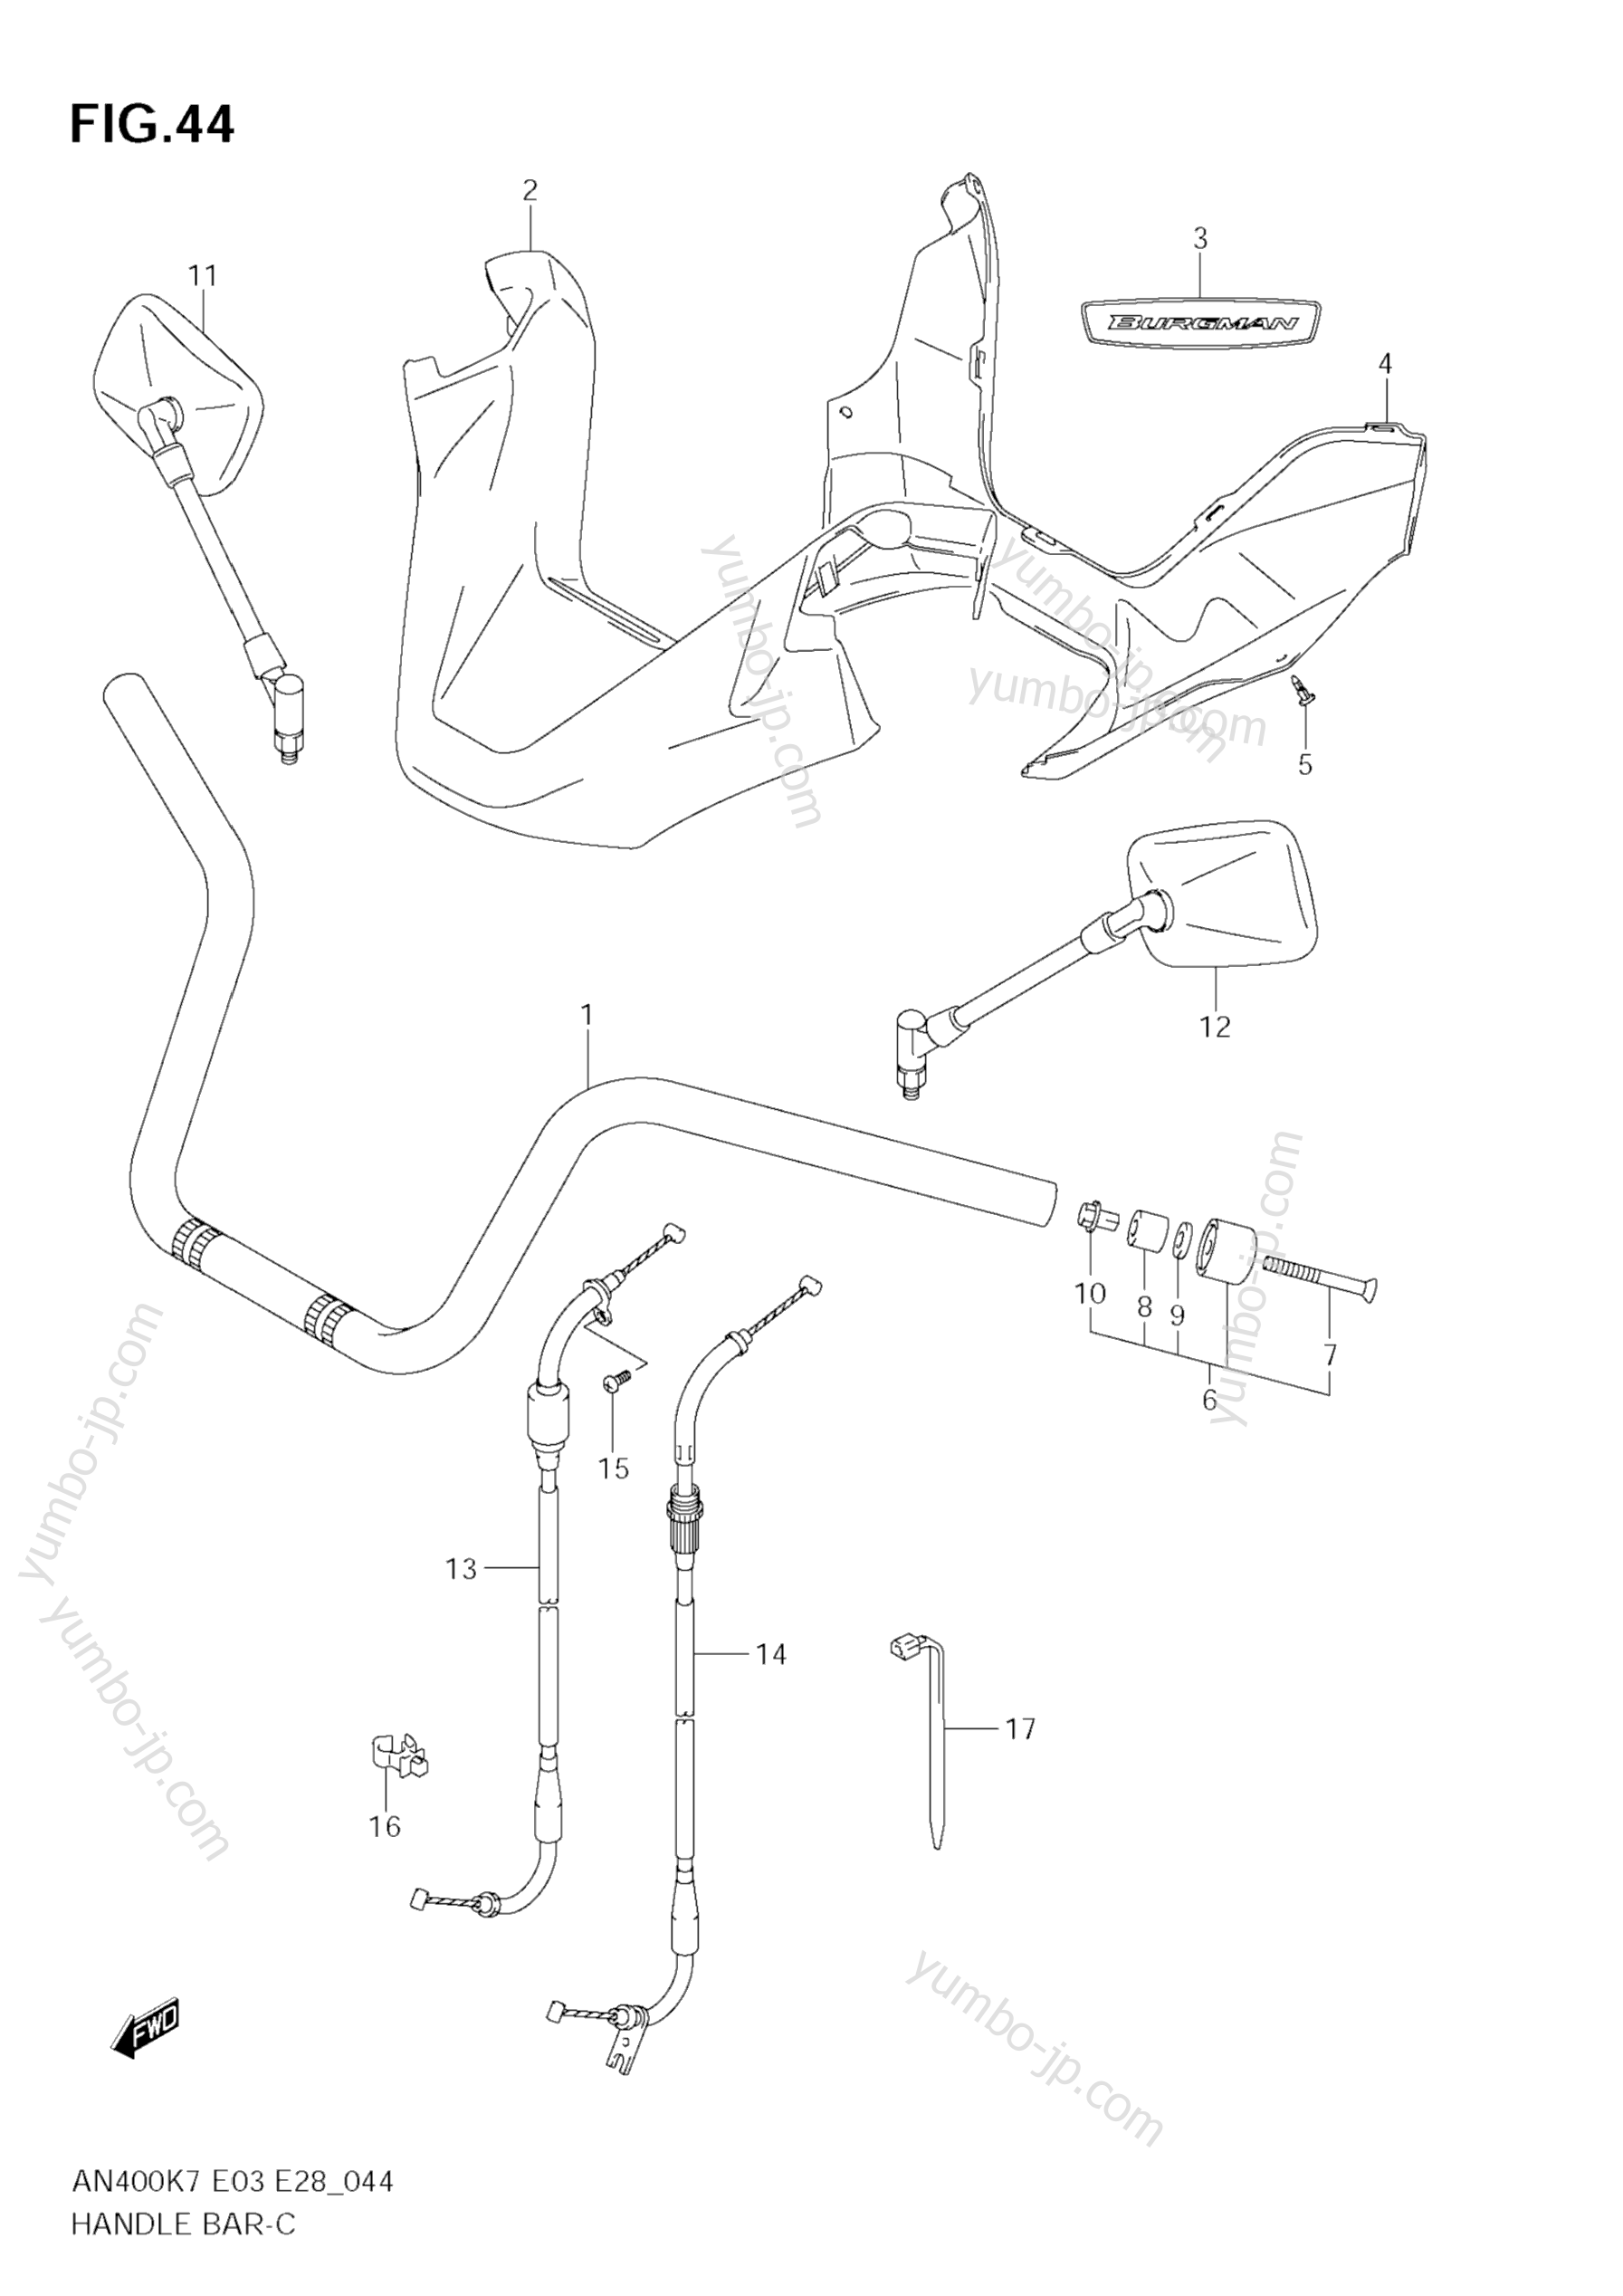 Румпель (рукоятка управления) для скутеров SUZUKI Burgman (AN400A) 2007 г.